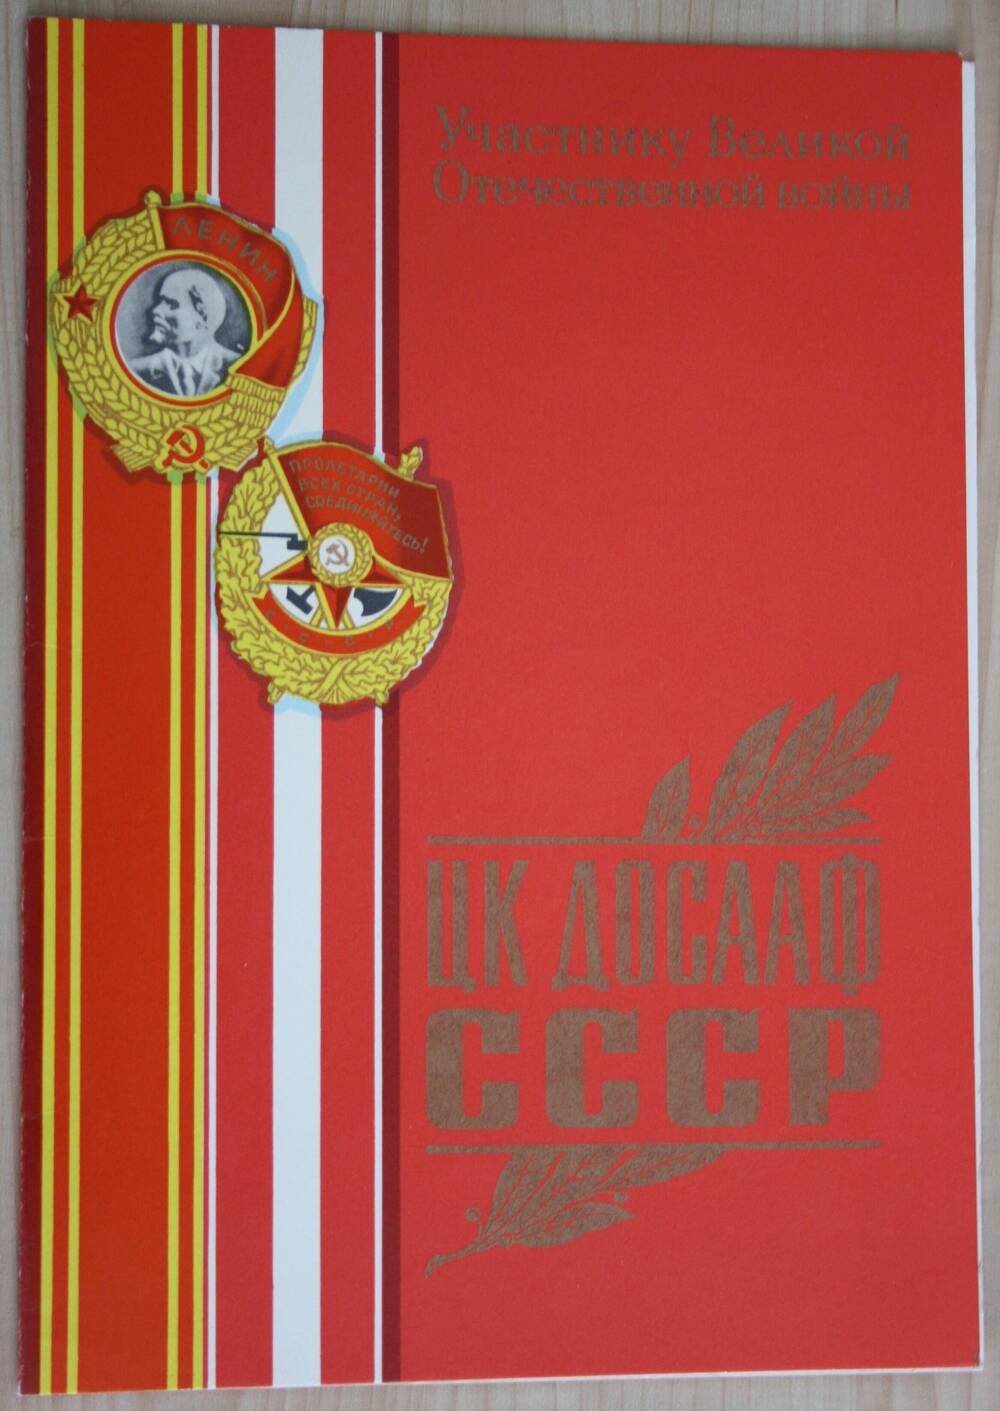 Поздравительный адрес Китришу Н.А. с 40-летием  Победы советского народа в Великой Отечественной войне 1941-1945 годов